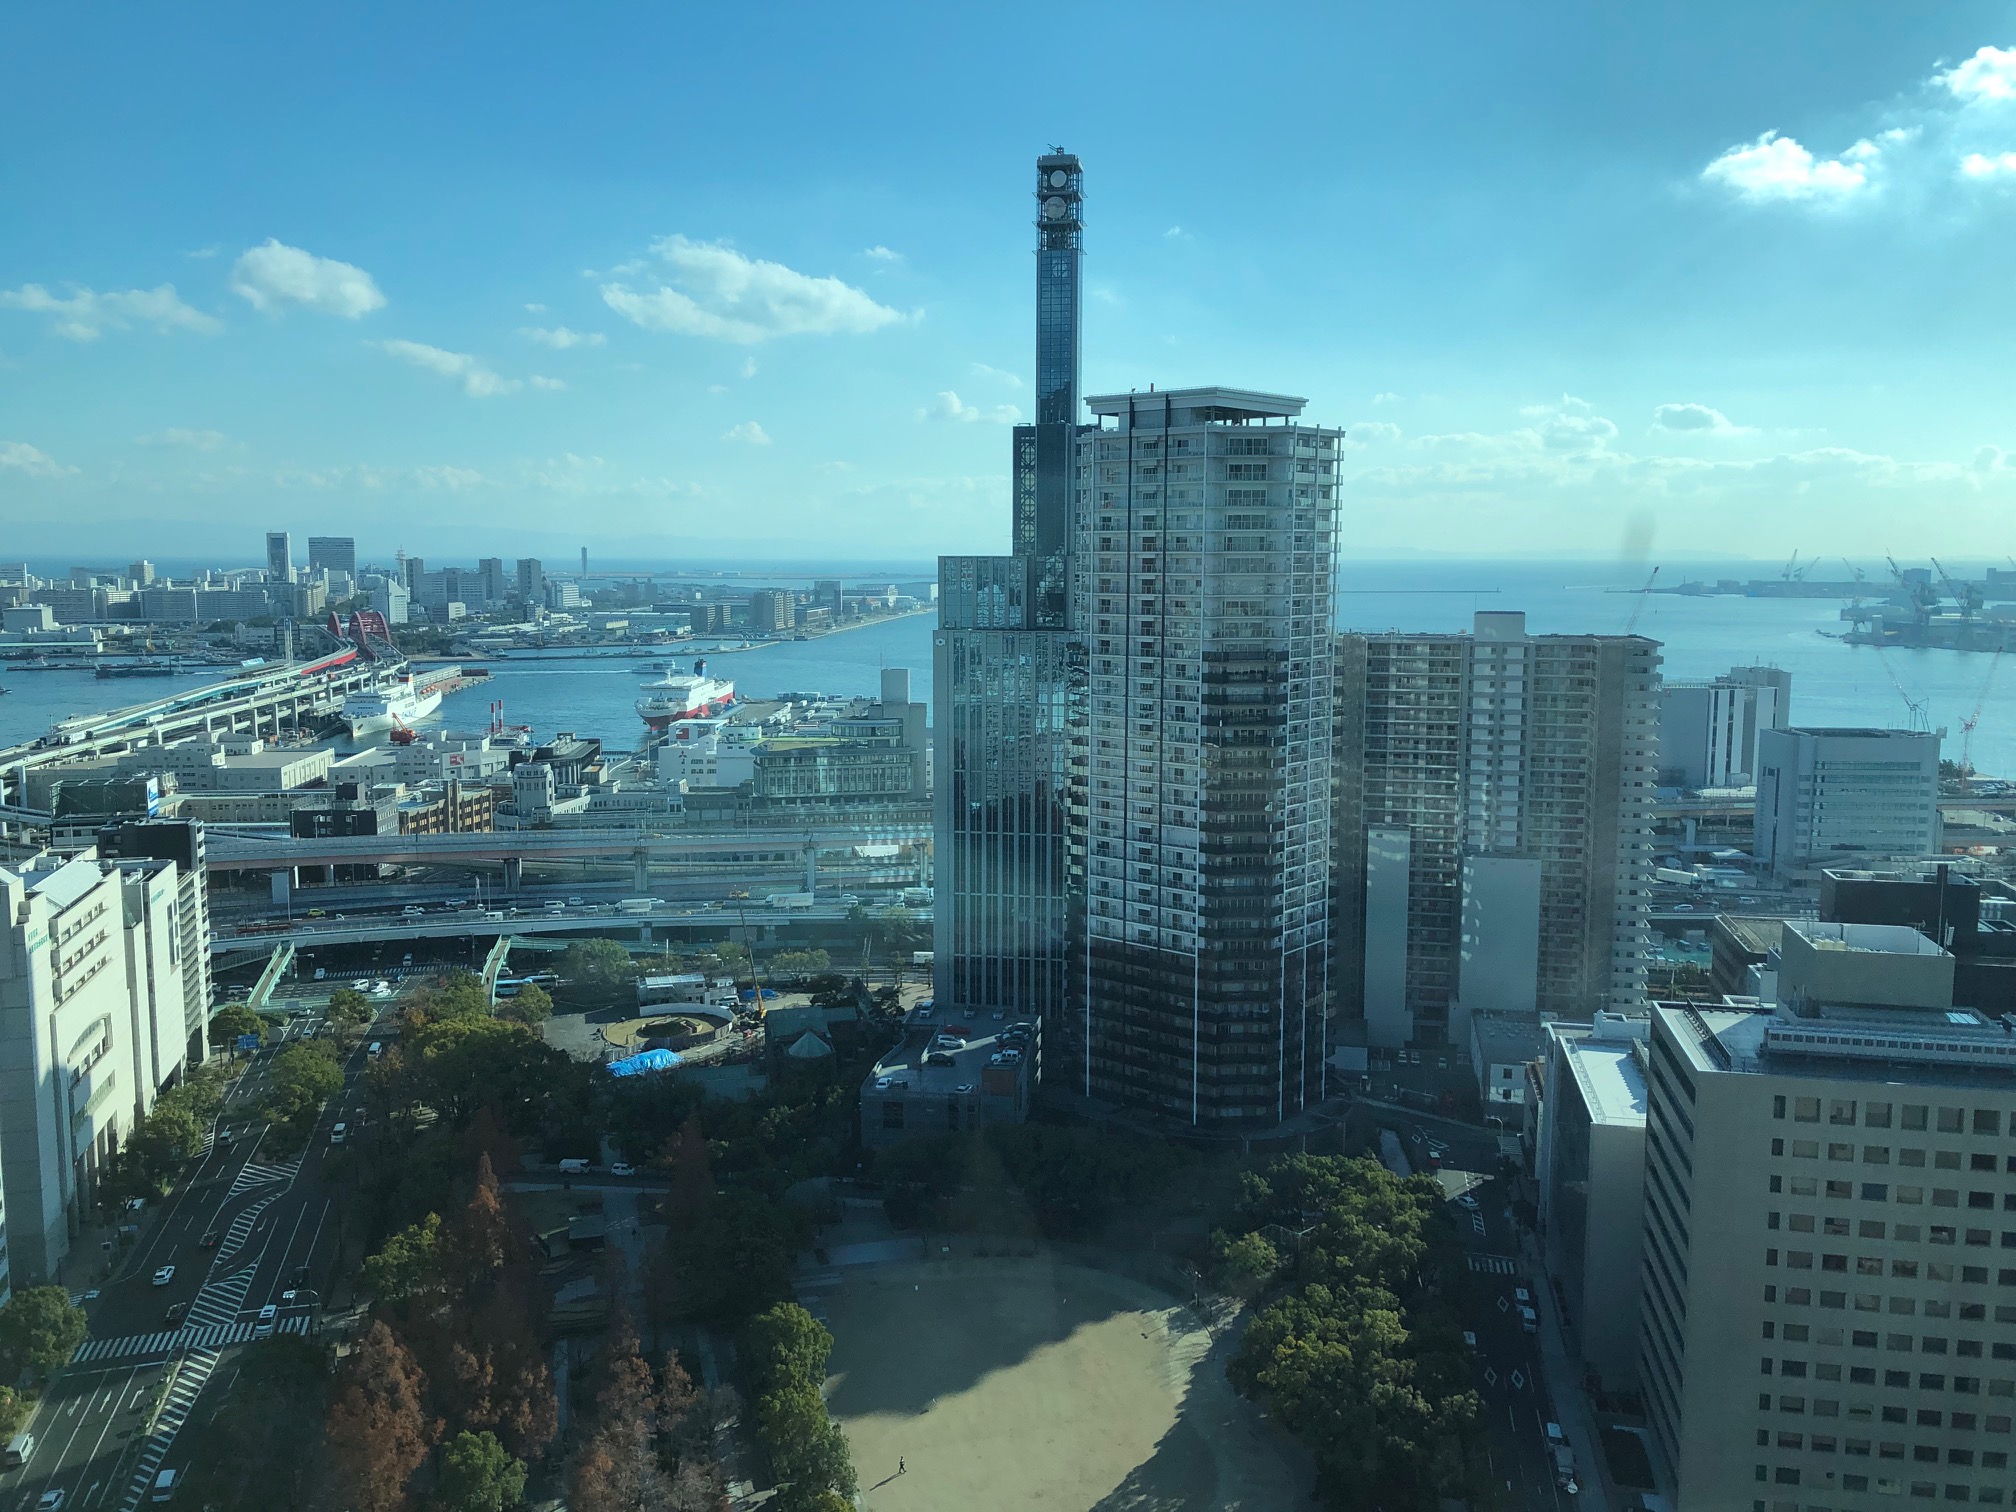 神戸市役所から見た新港突堤西地区。左側には第3突堤のフェリーターミナルや第4突堤の神戸ポートターミナルが確認できる。